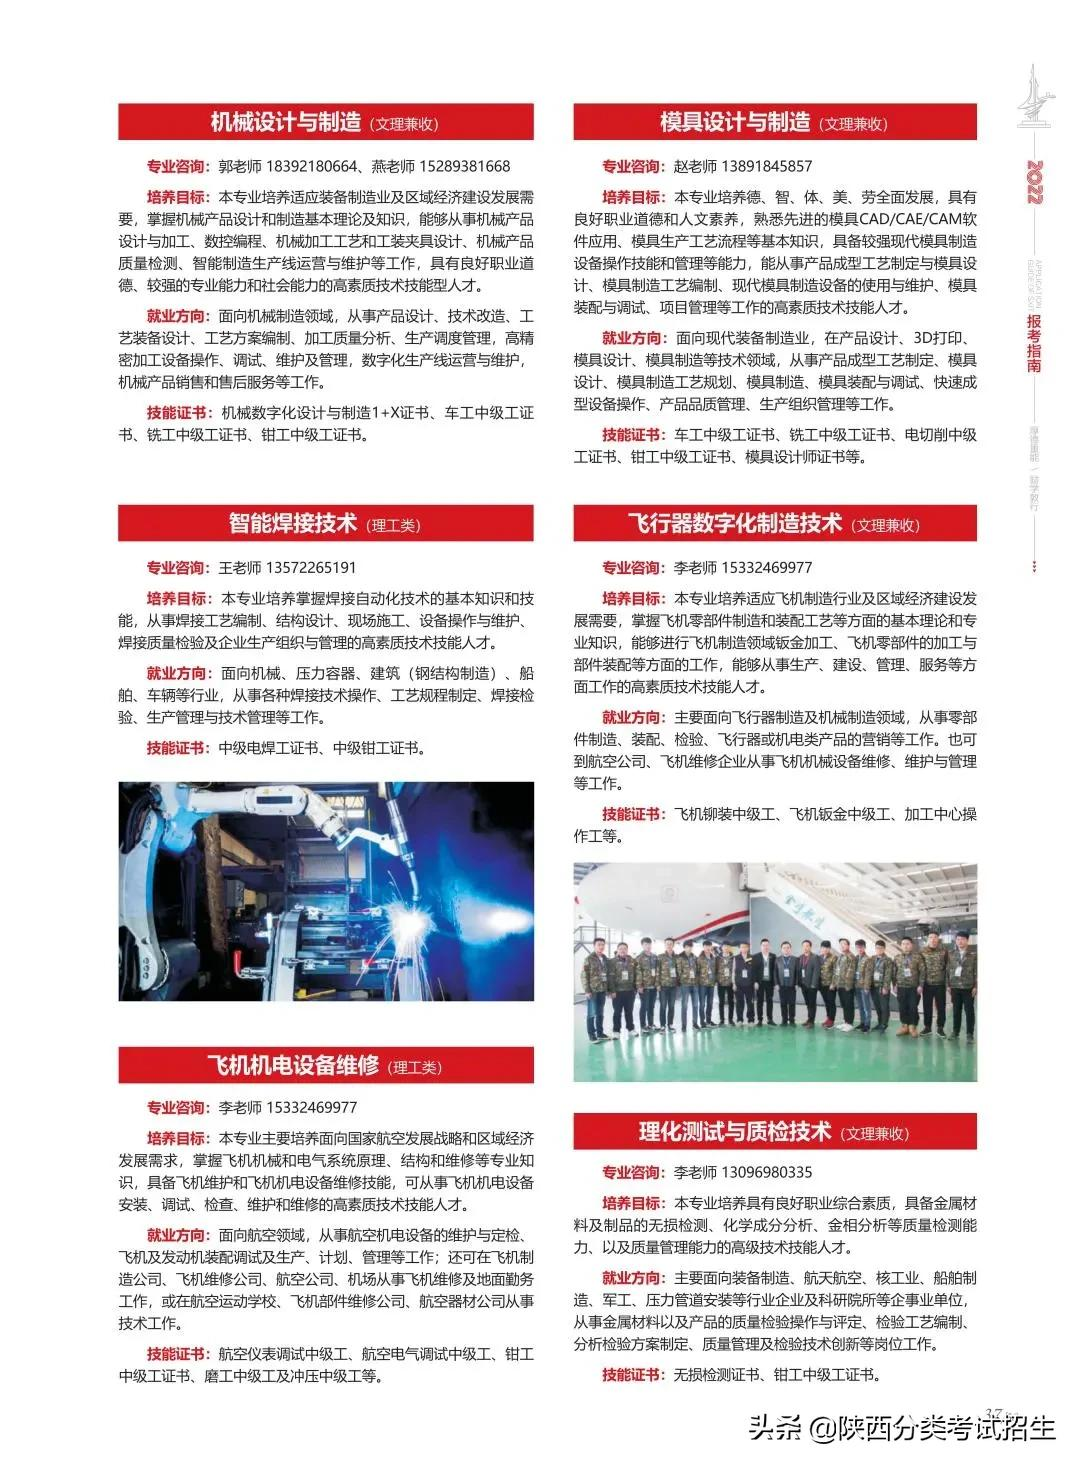 「招生简章」陕西国防工业职业技术学院2022年分类考试招生简章